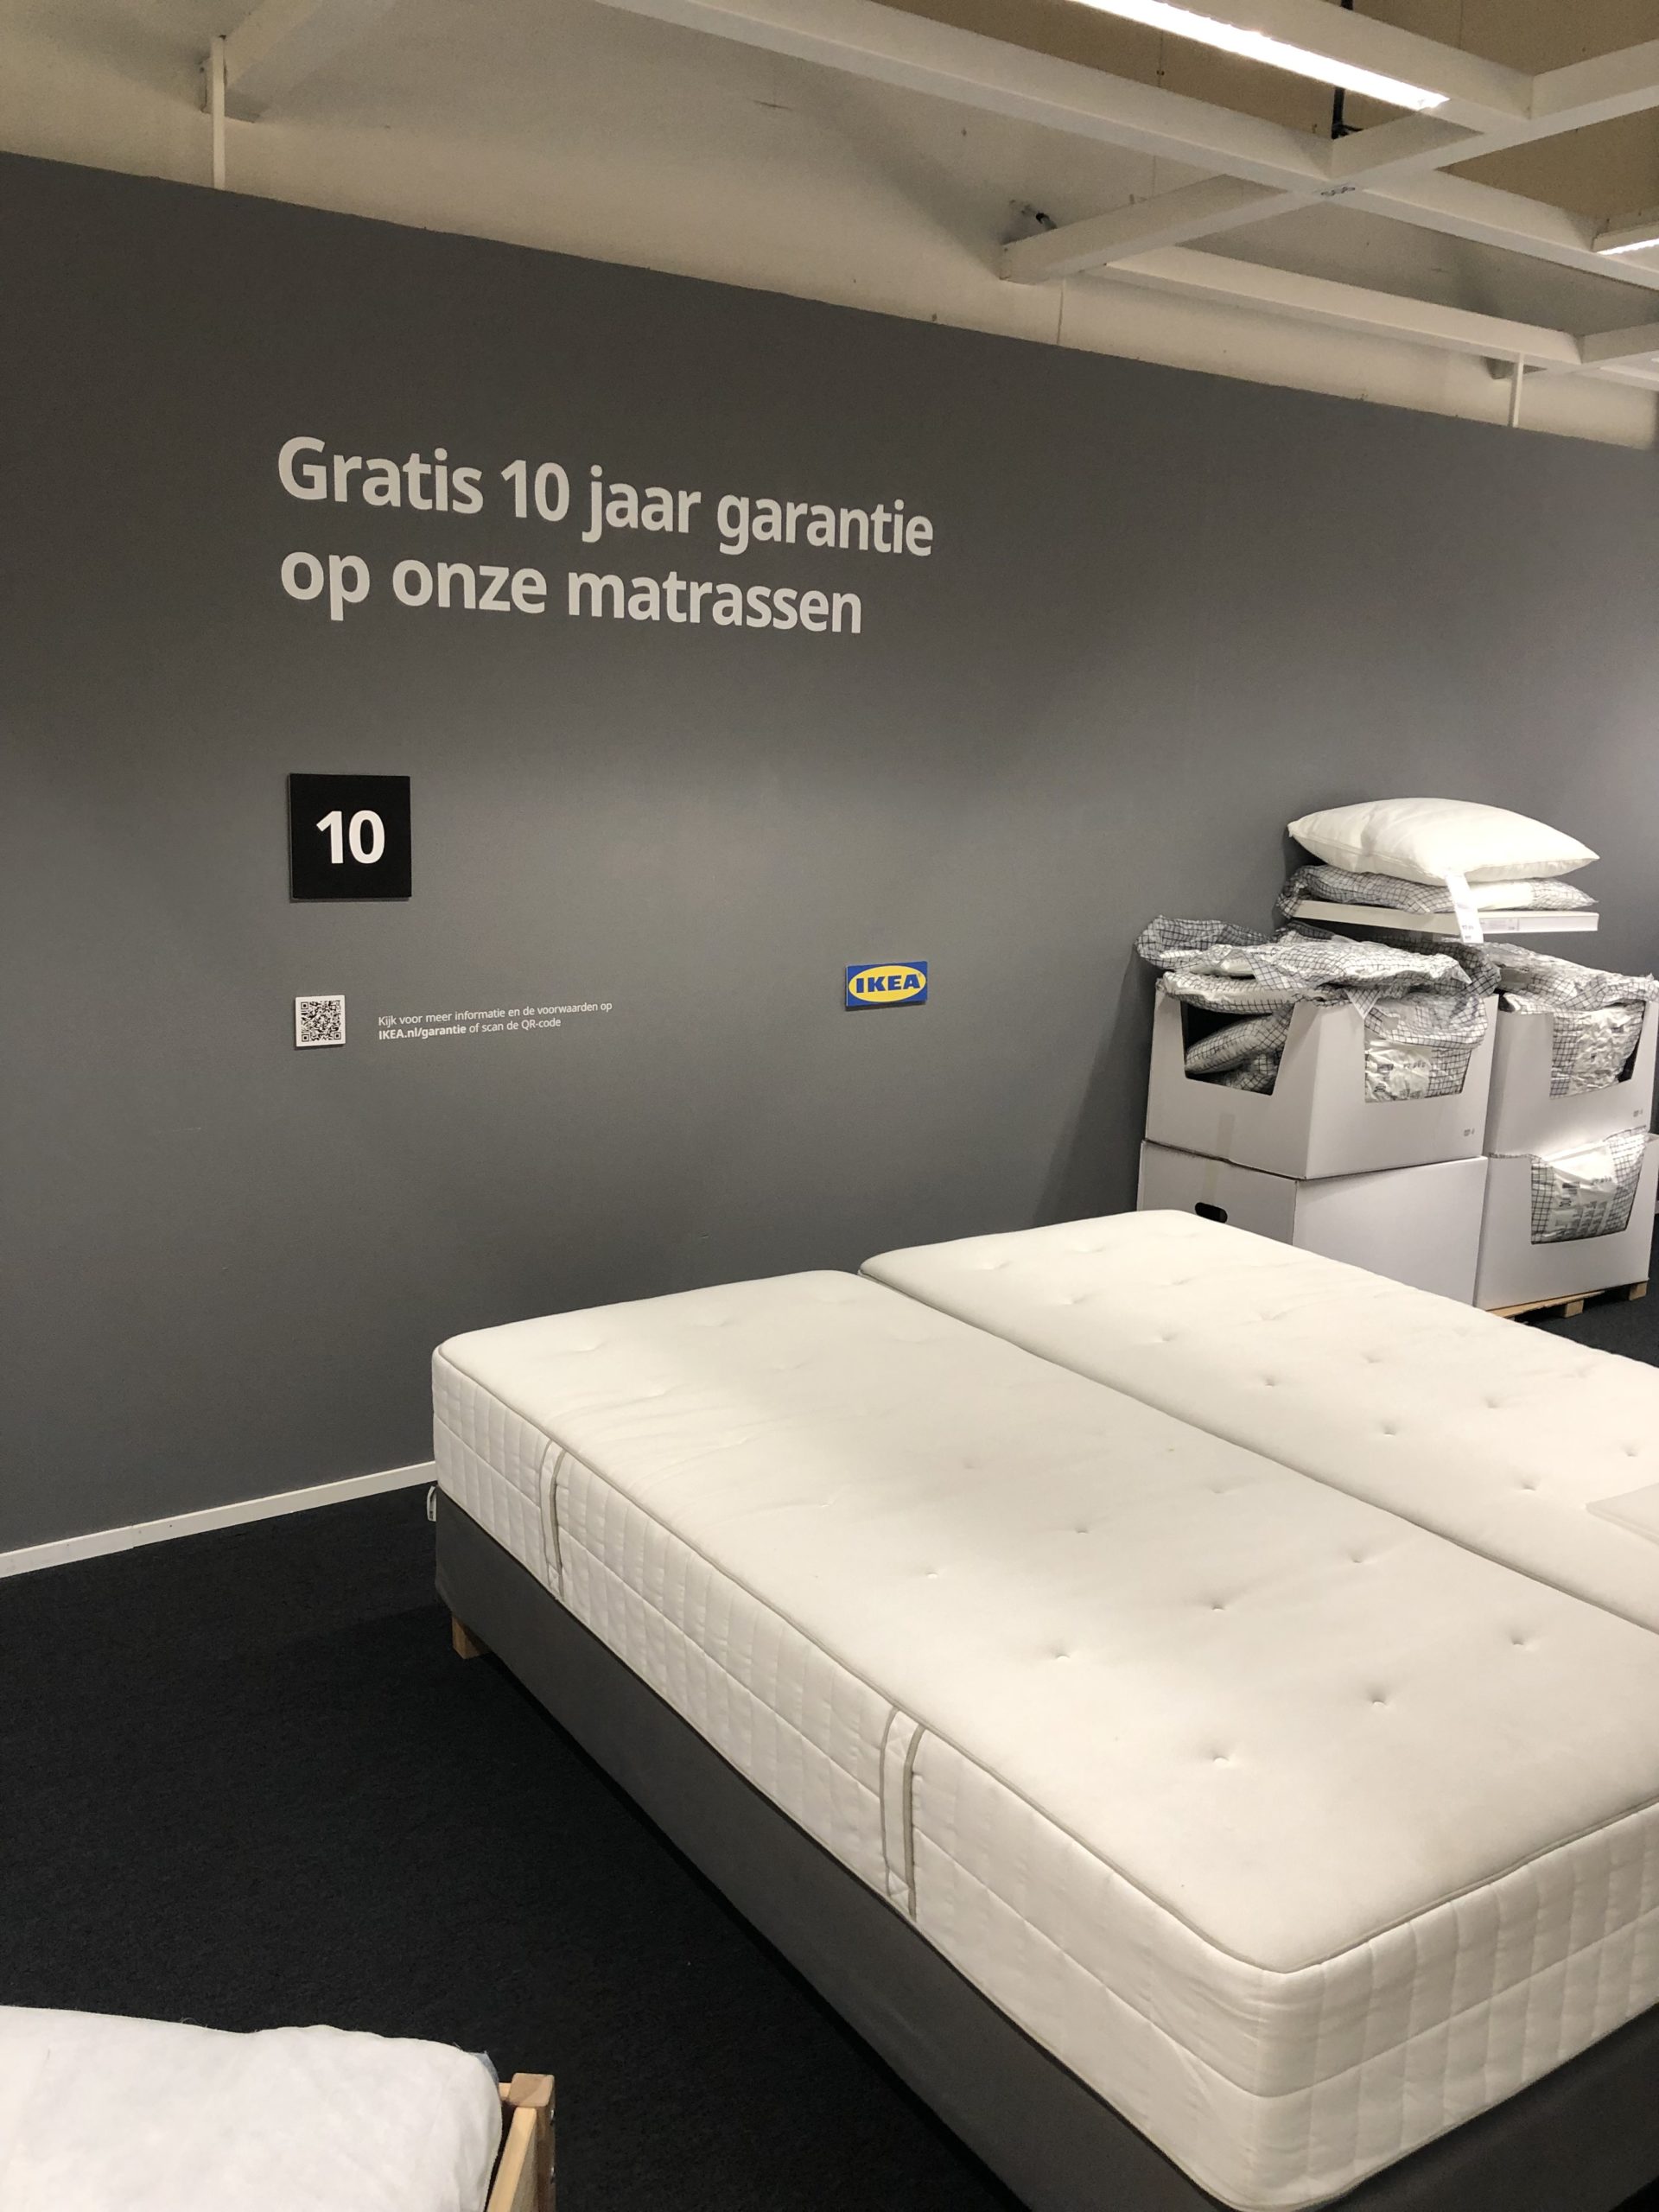 IKEA van merkwaarden - 4Ggrowth Retail marketing & research